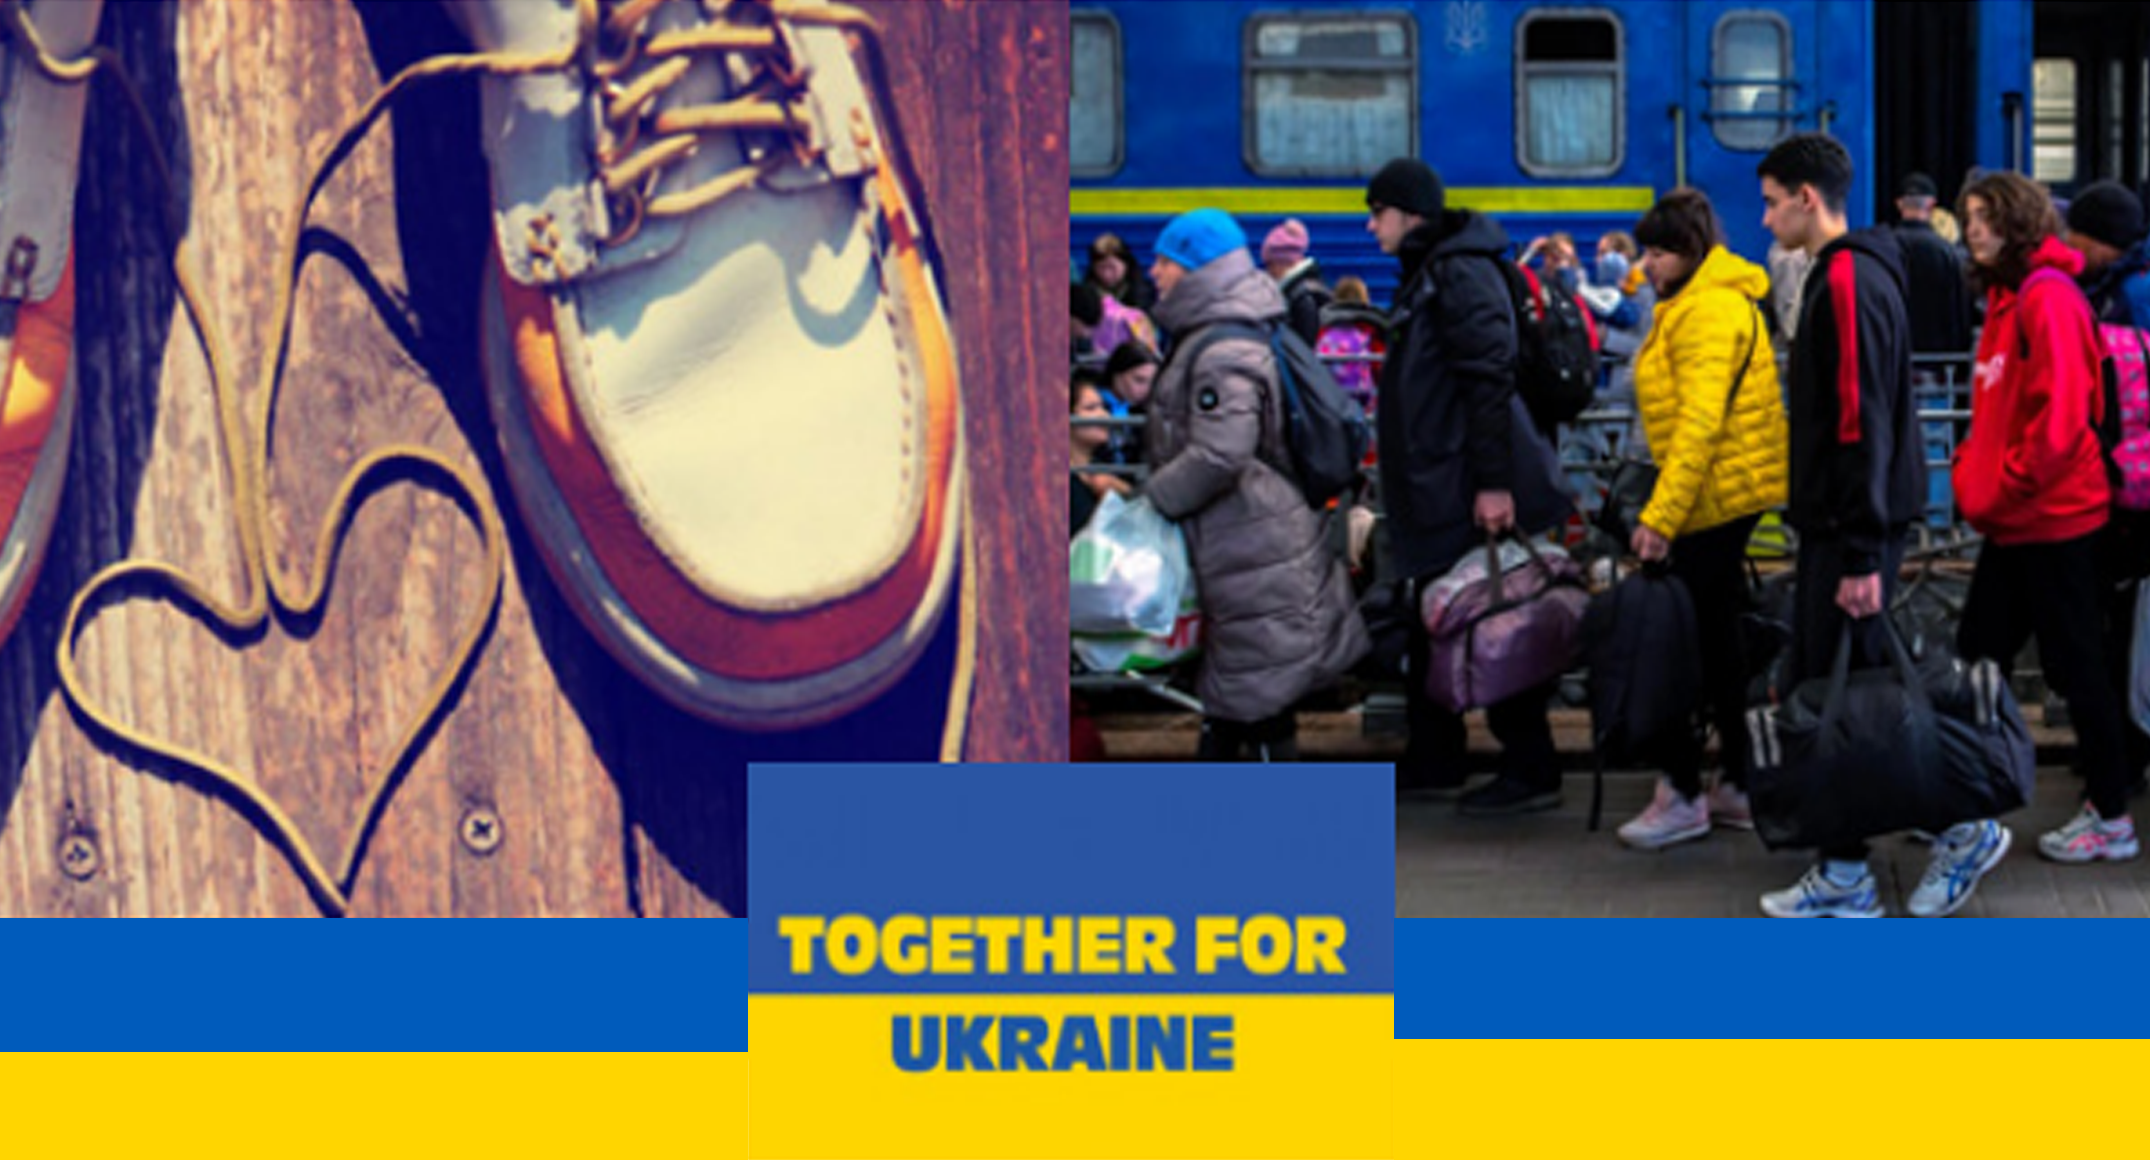 INZAMELINGSACTIE: 'Together for Ukraine'